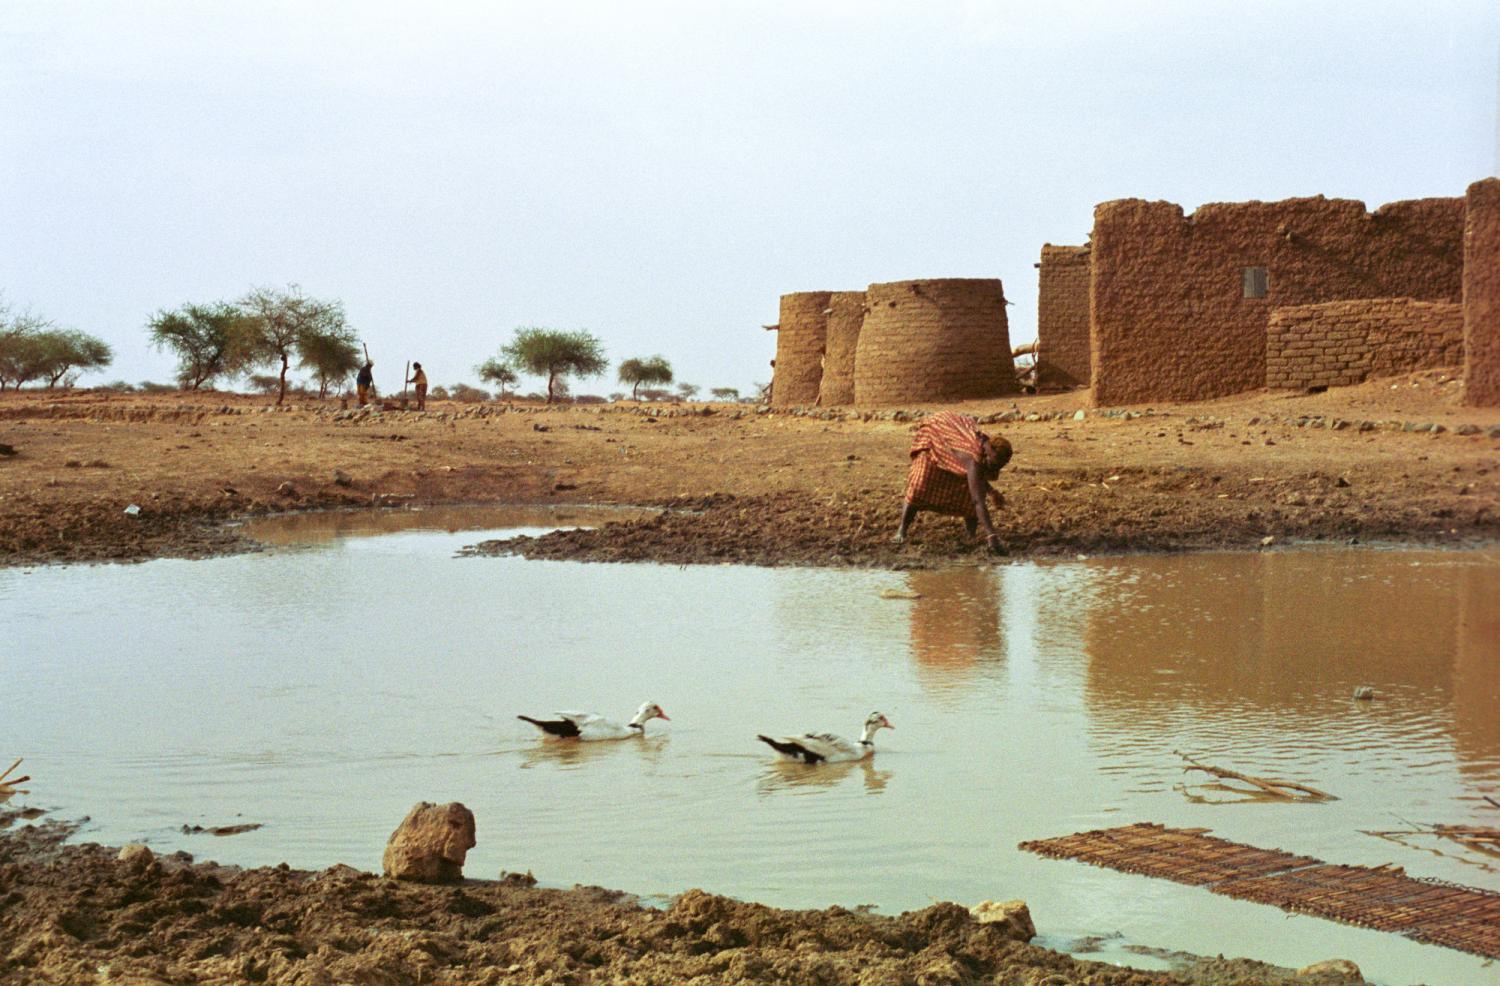 Deux canards sur le marigot, Rakia baissée pour tremper les lanières de cuir dans la boue, et derrière, quelques édifices en banco du village. Bosseye Dogabe, Burkina Faso, mai 2008.